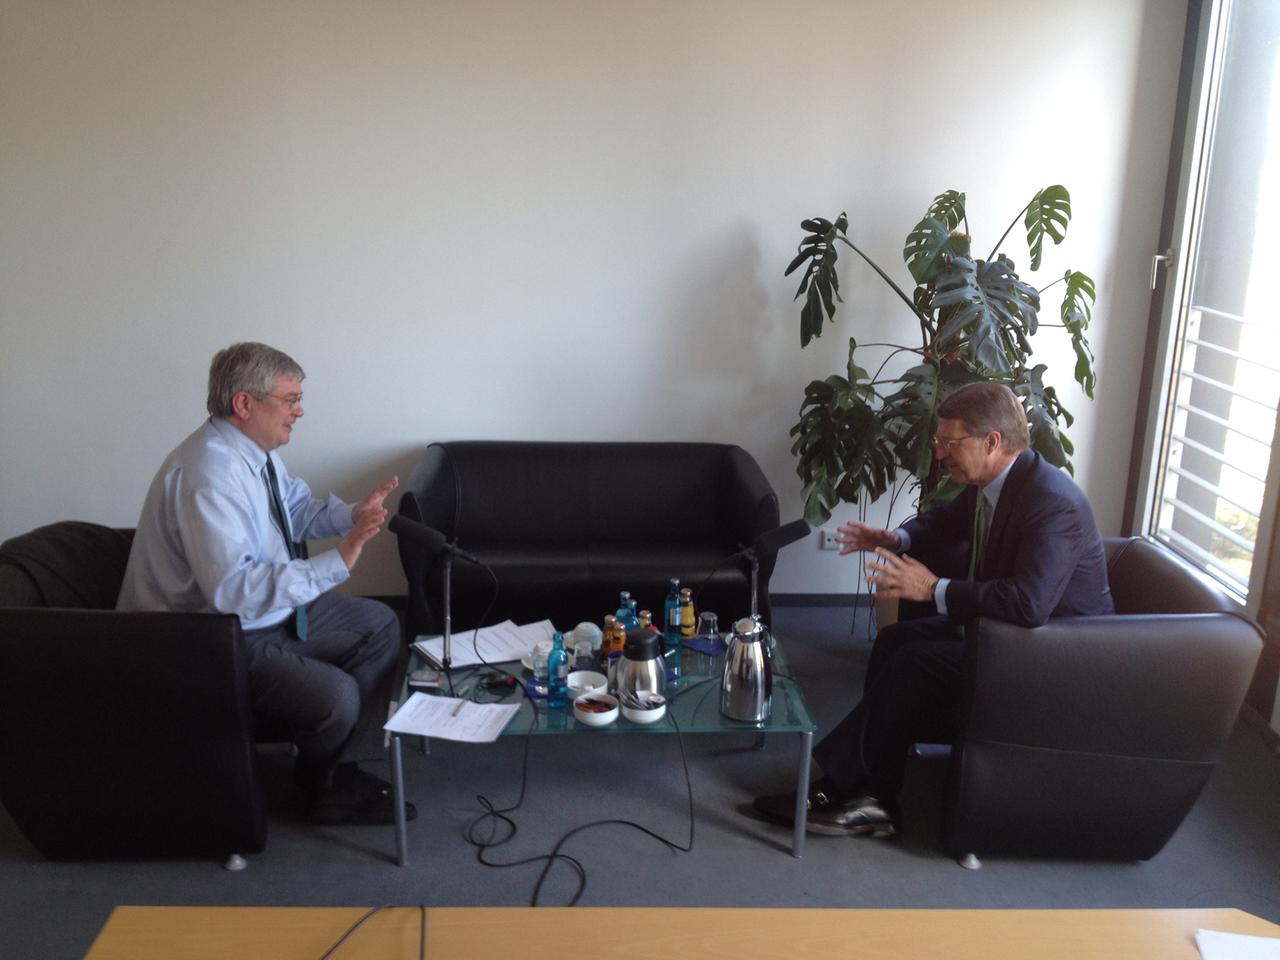 Eckhard Cordes (rechts) im Gespräch mit Klemens Kindermann, an einem niedrigen Tisch sich gegenüber sitzend, auf dem Tisch stehen Mikrofone, Kaffeekanne, Tassen und Flaschen.